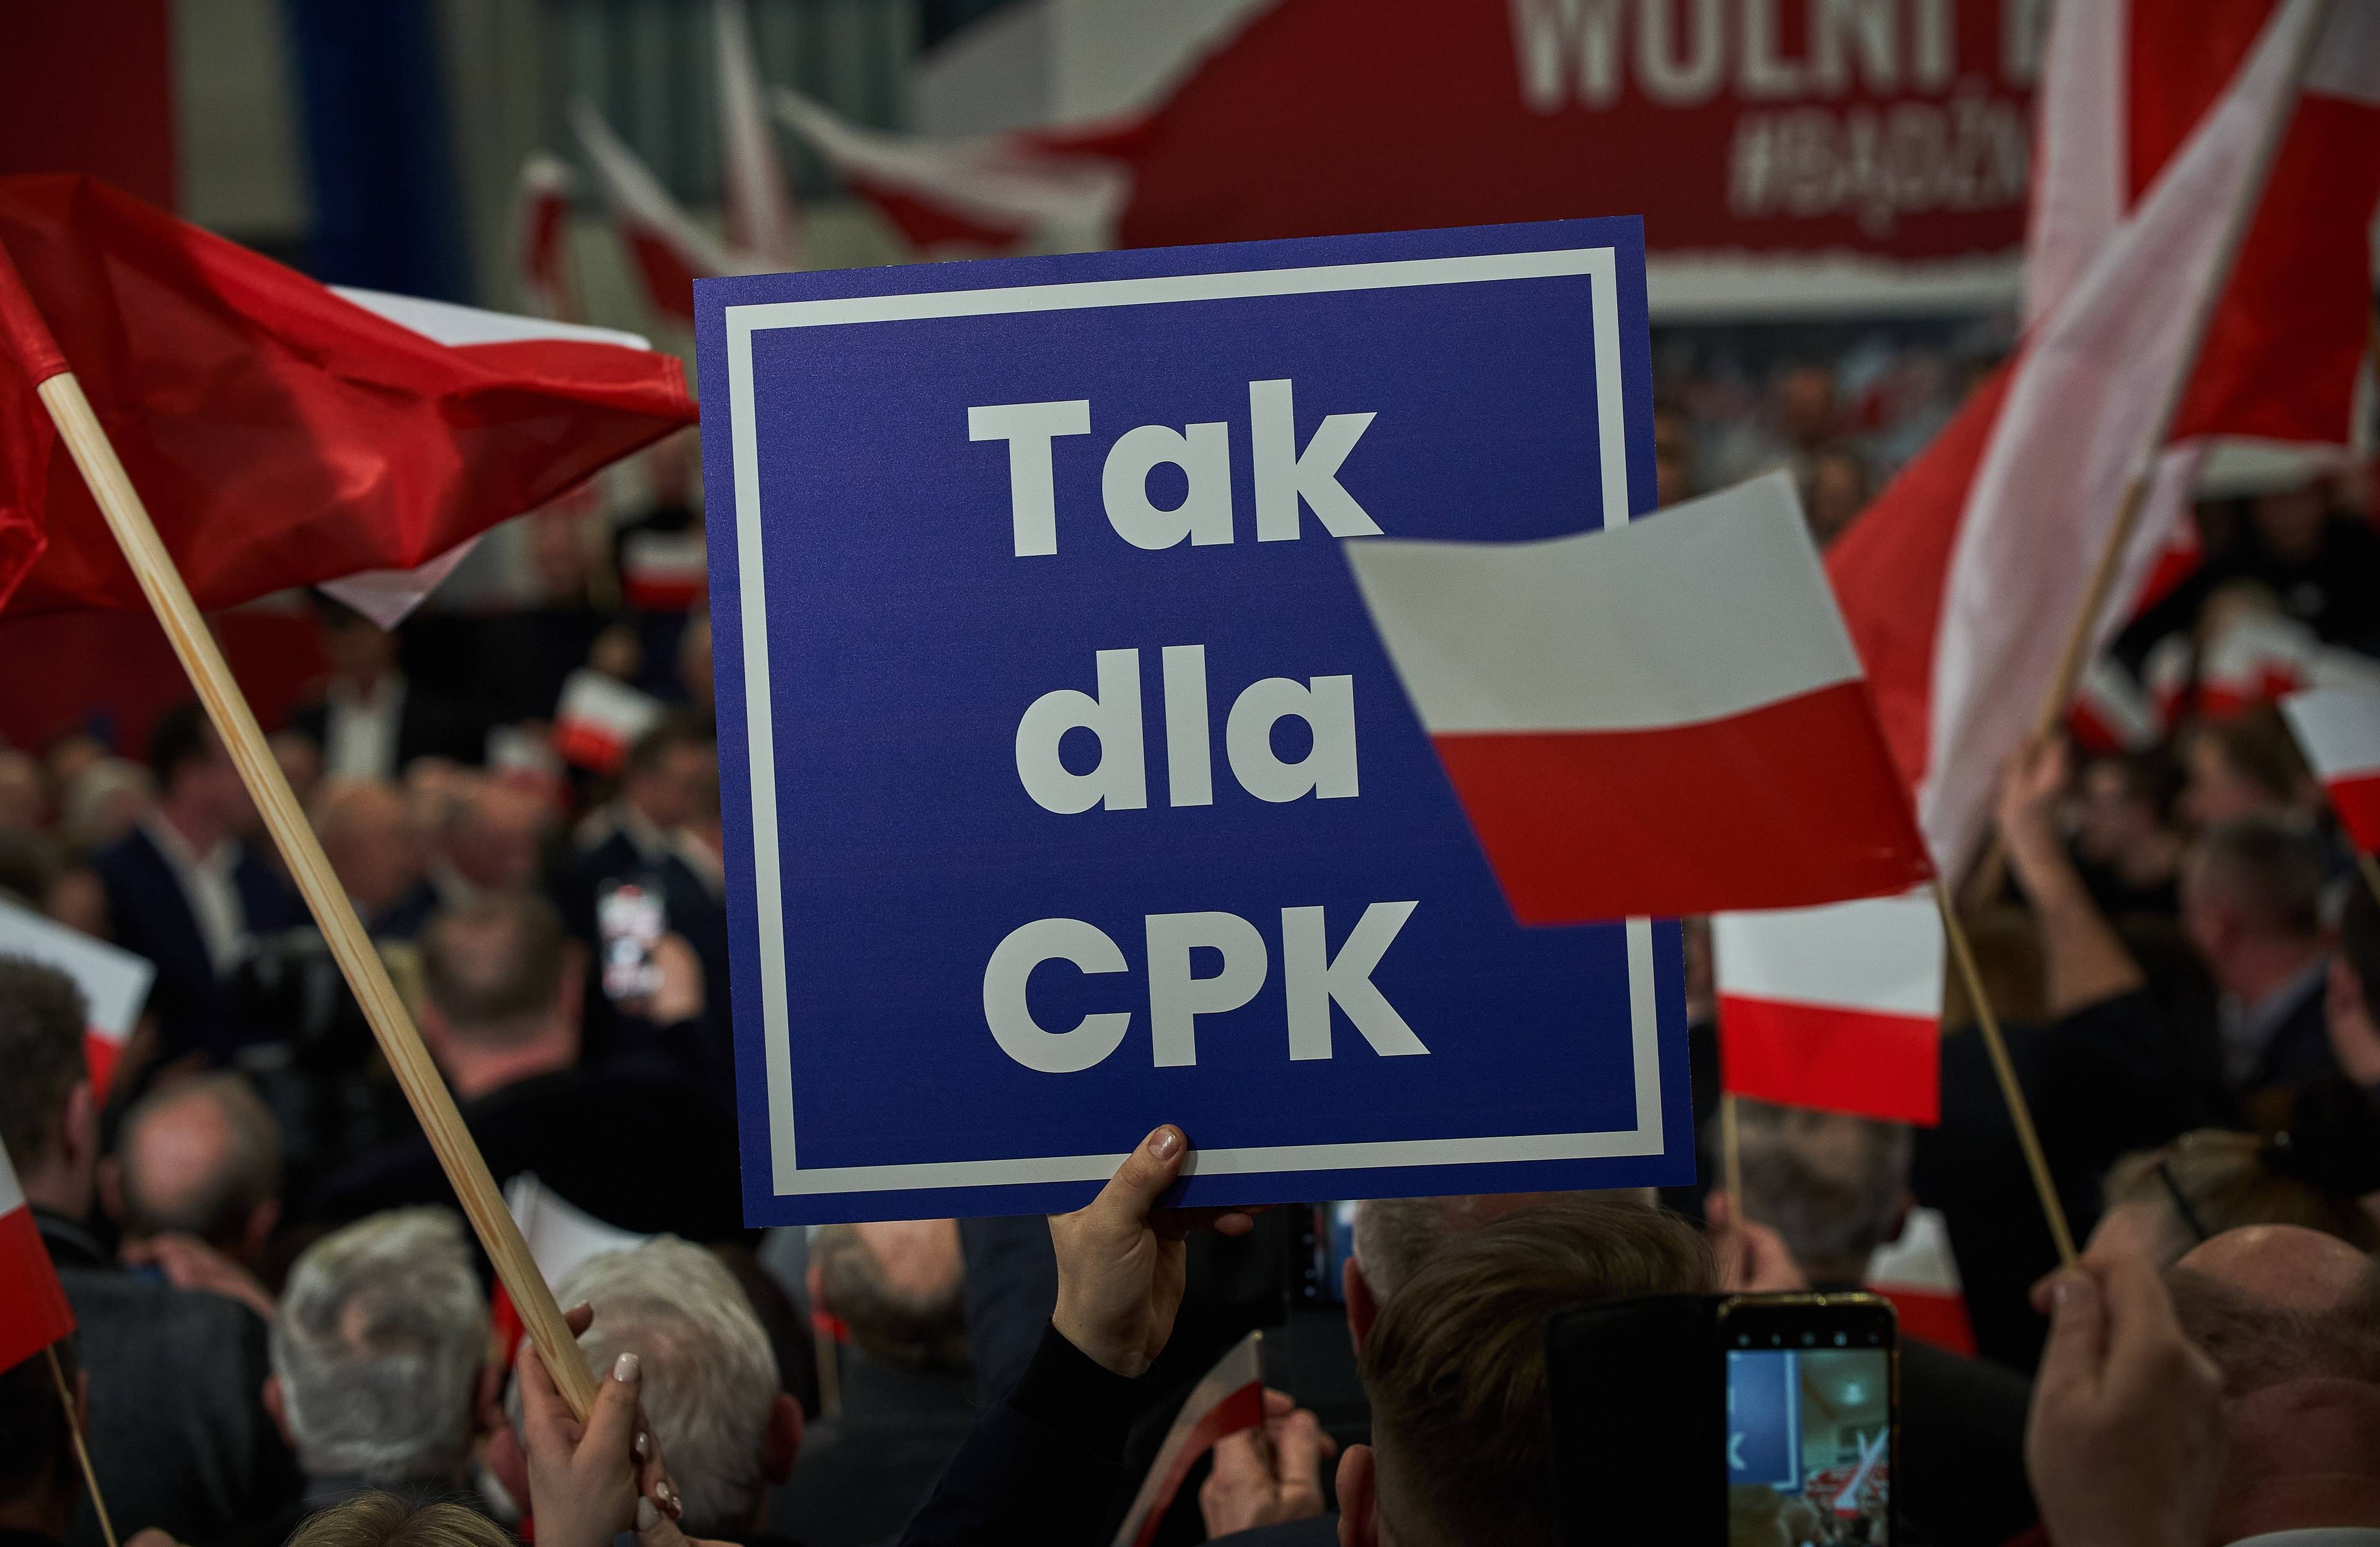 Kwadratowy niebieski banner z napisem "Tak dla CPK"